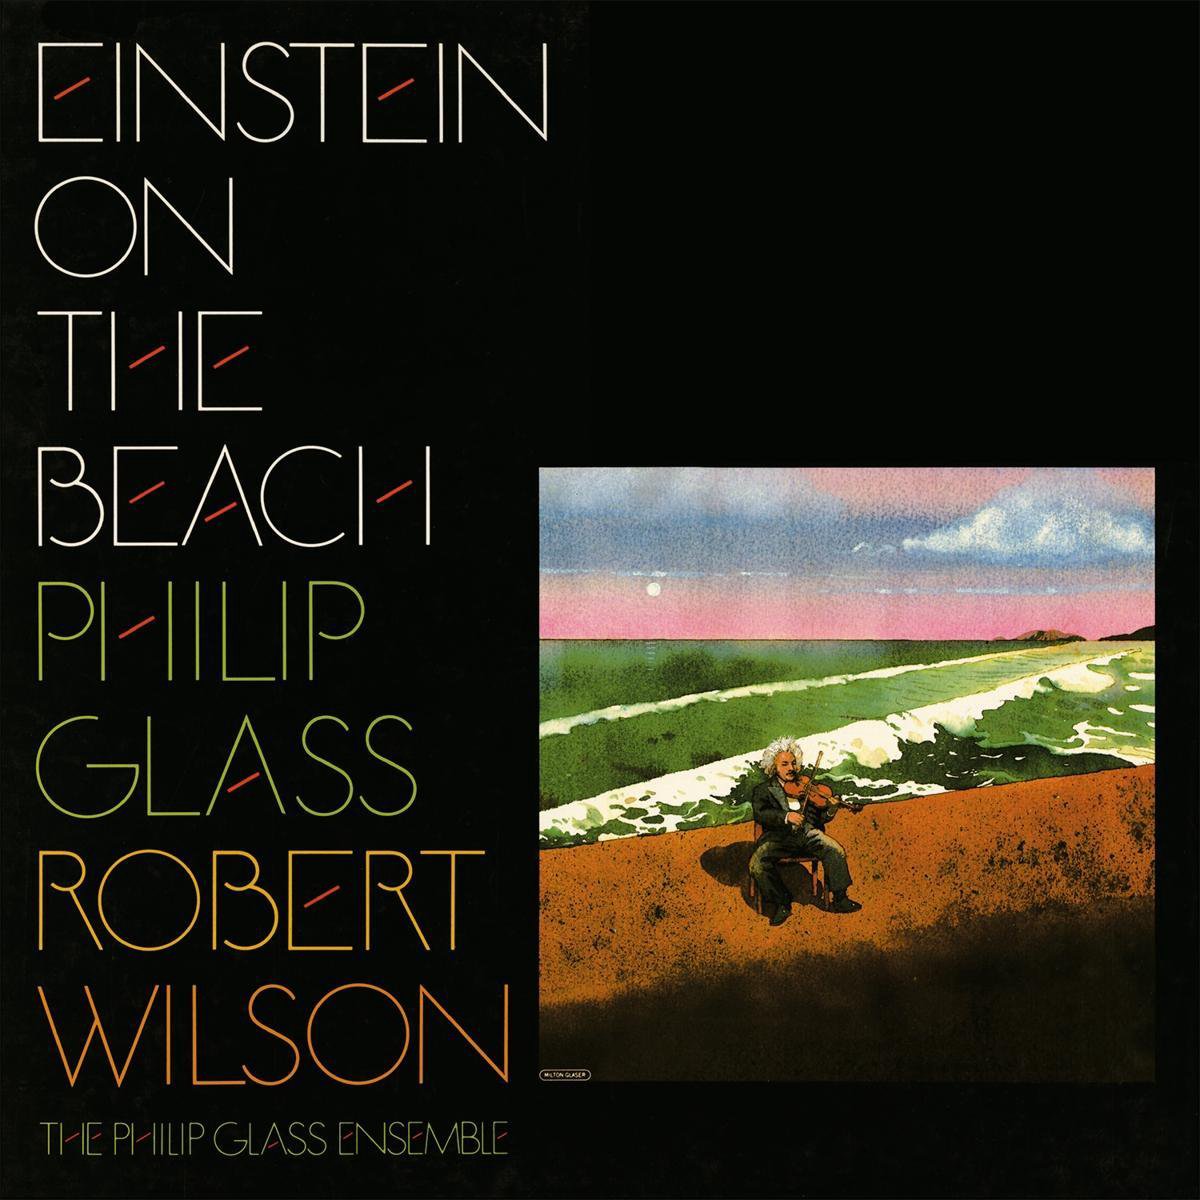 Einstein on the Beach, Philip Glass, Robert Wilson